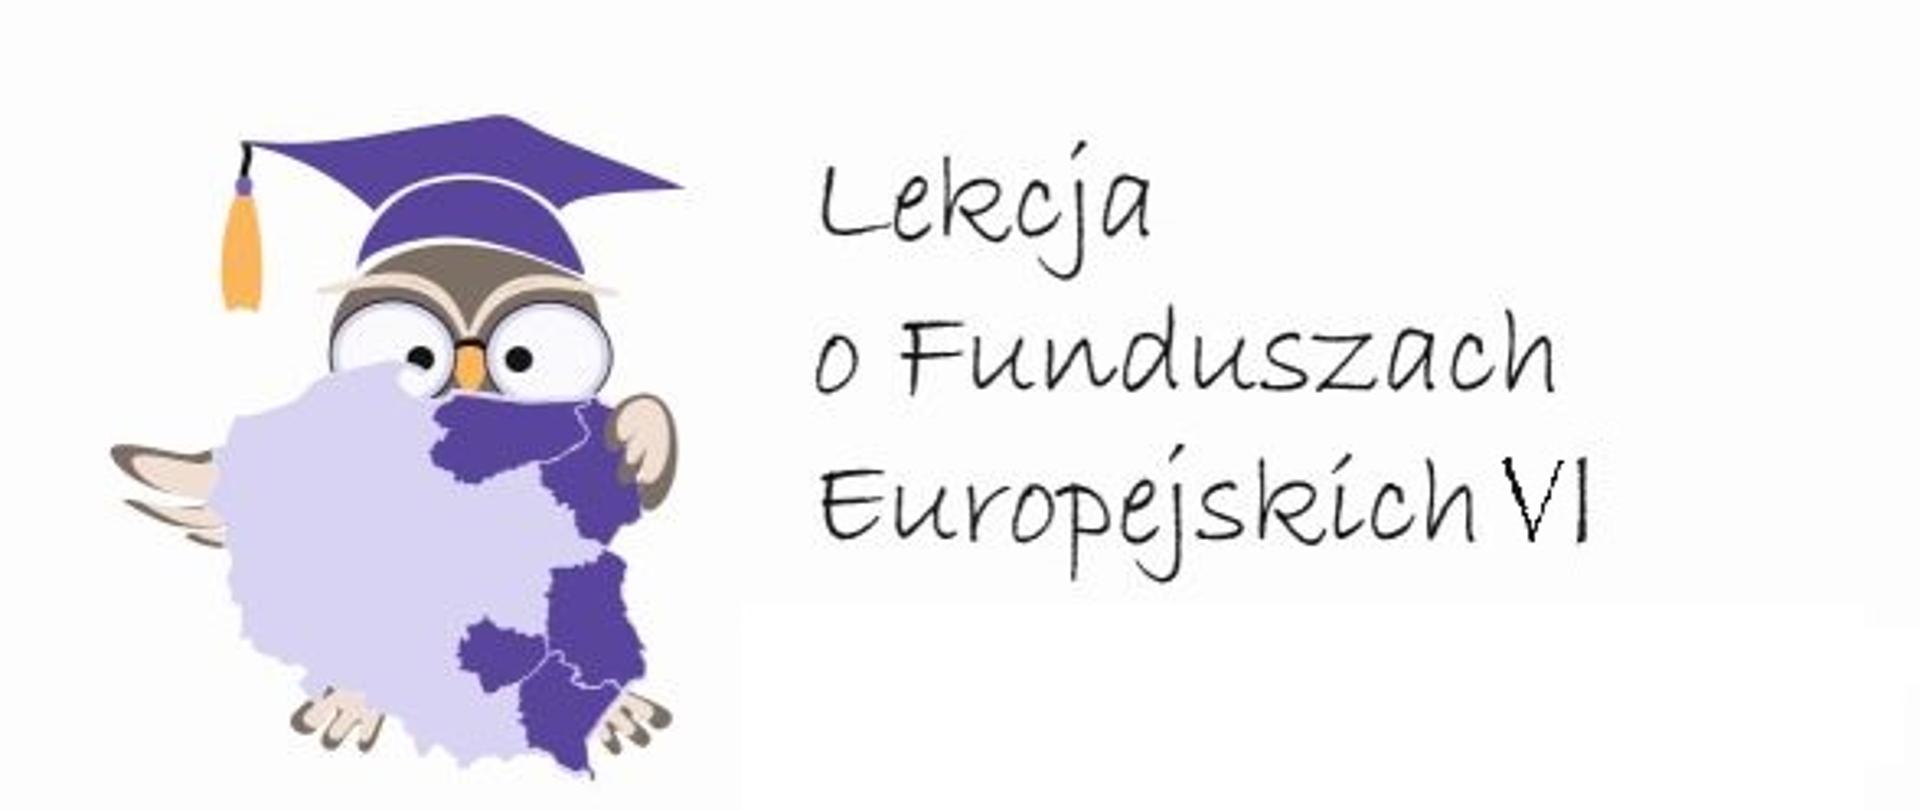 obok napisu Lekcja o Funduszach Europejskich sześć (cyfra rzymska), symbolizująca naukę sowa trzymająca mapę Polski z zaznaczonymi województwami Polski Wschodniej